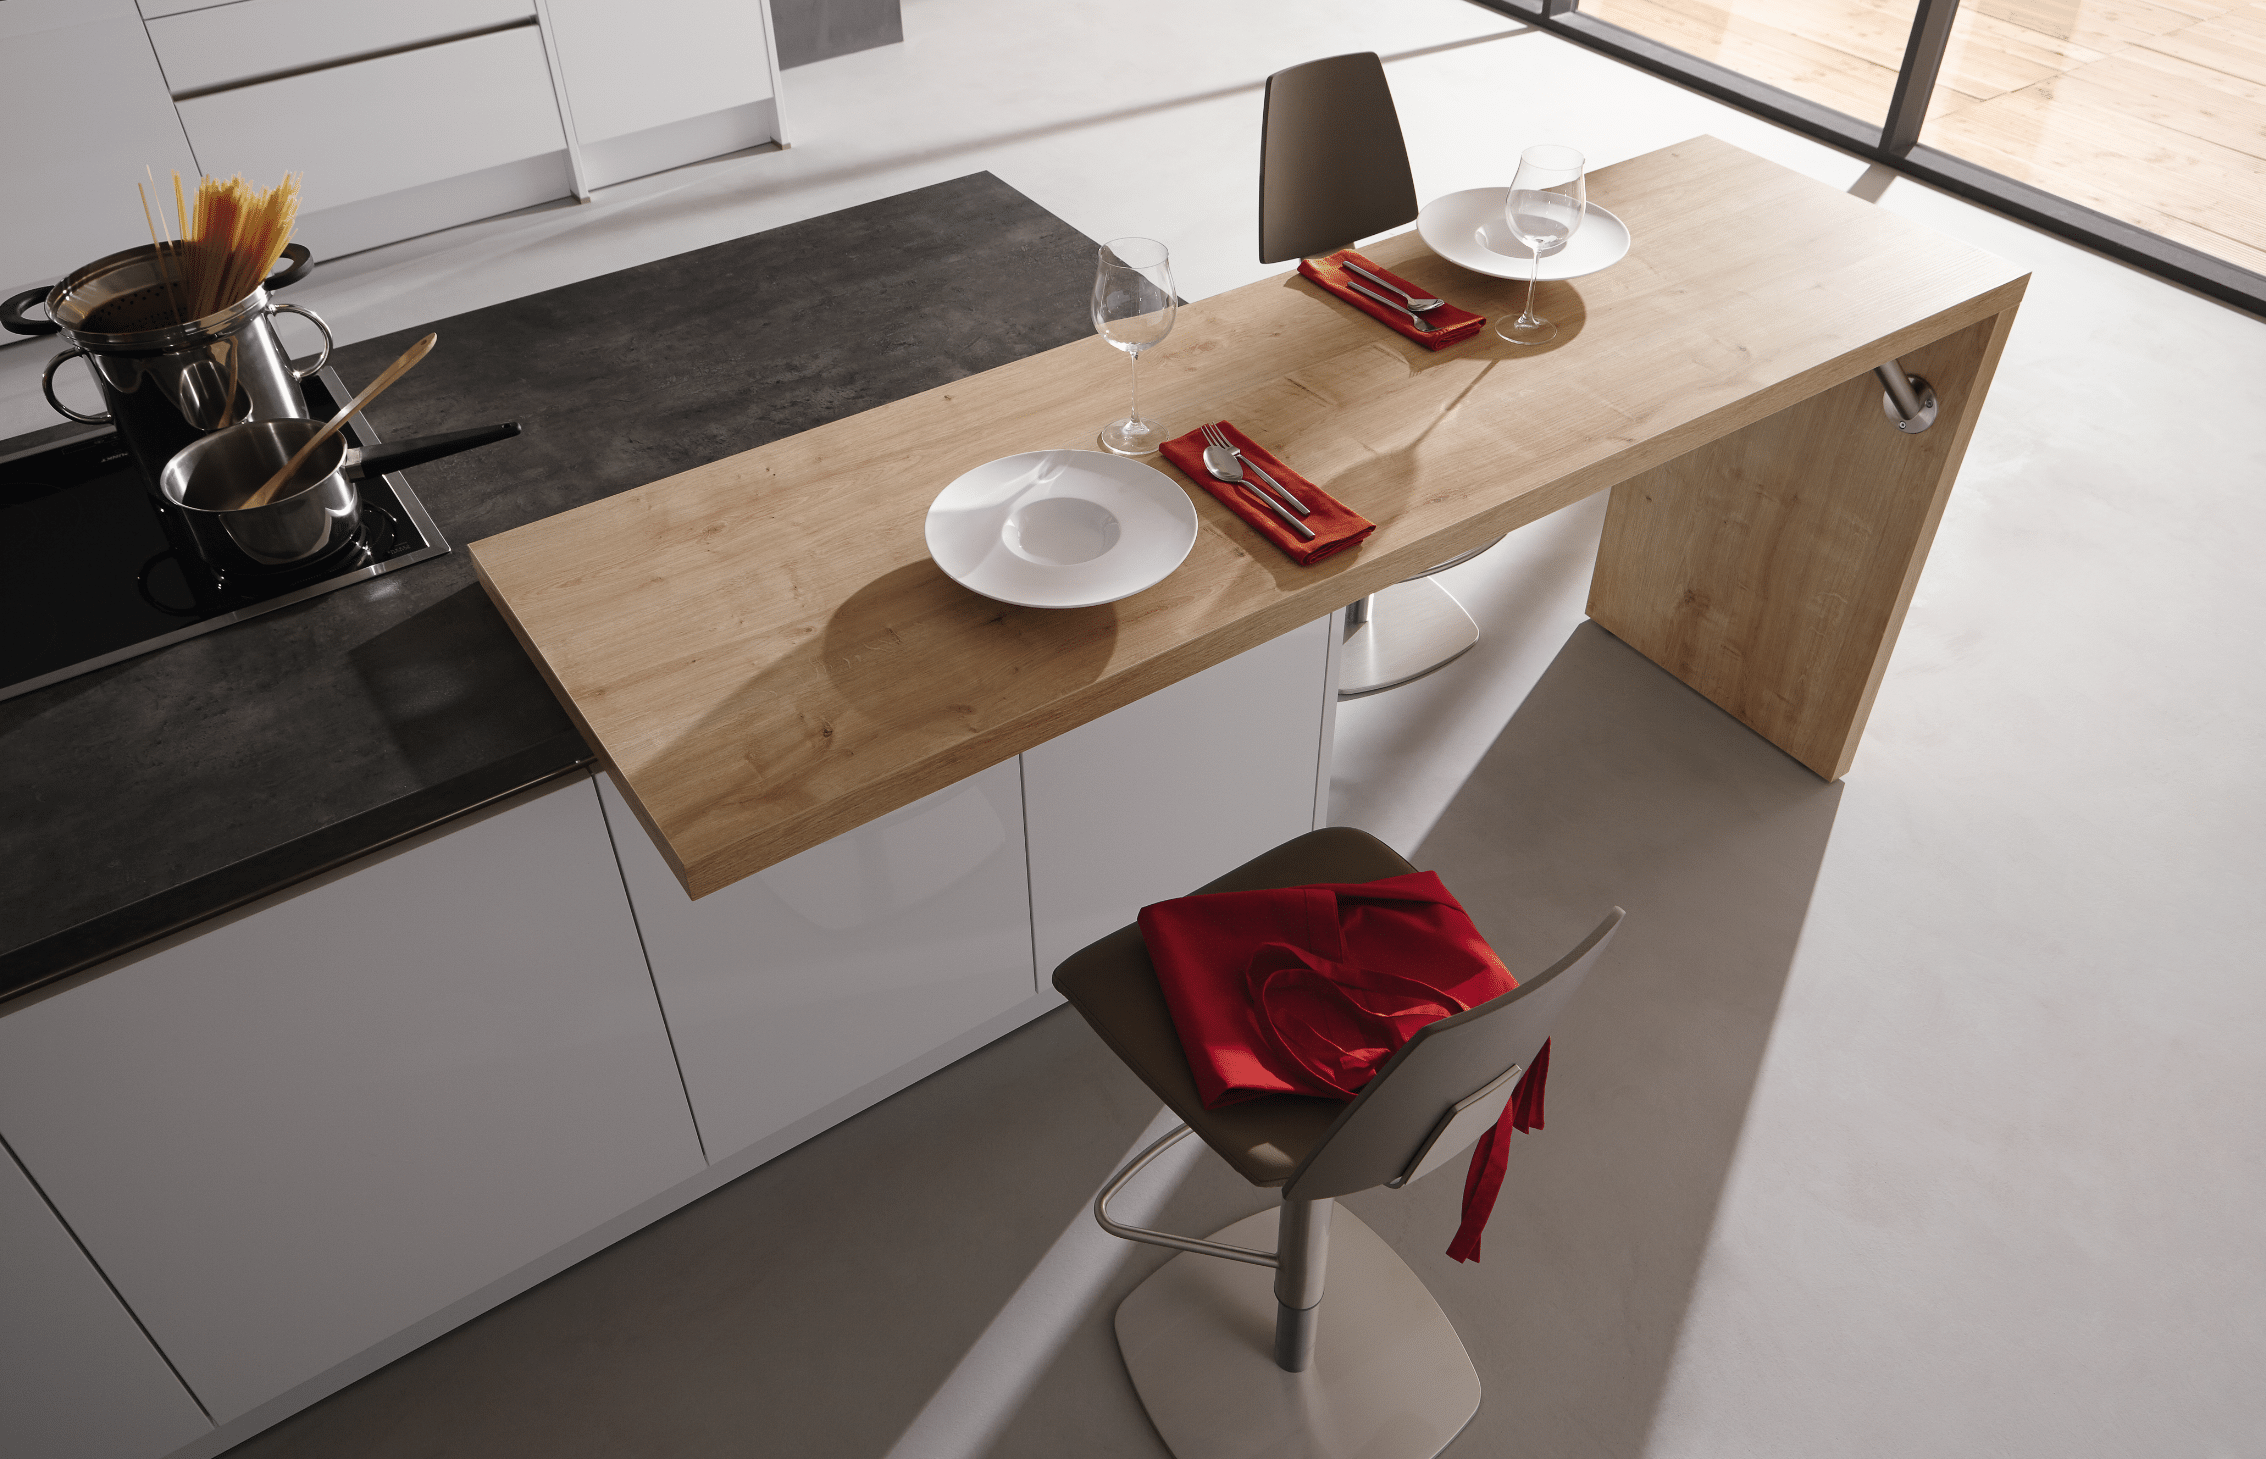 WOHNHAUS Grill & Ronacher zeigt eine Häcker Küche aus Holz, mit zwei Barhockern, die Fläche kann somit als Esstisch benutzt werden.